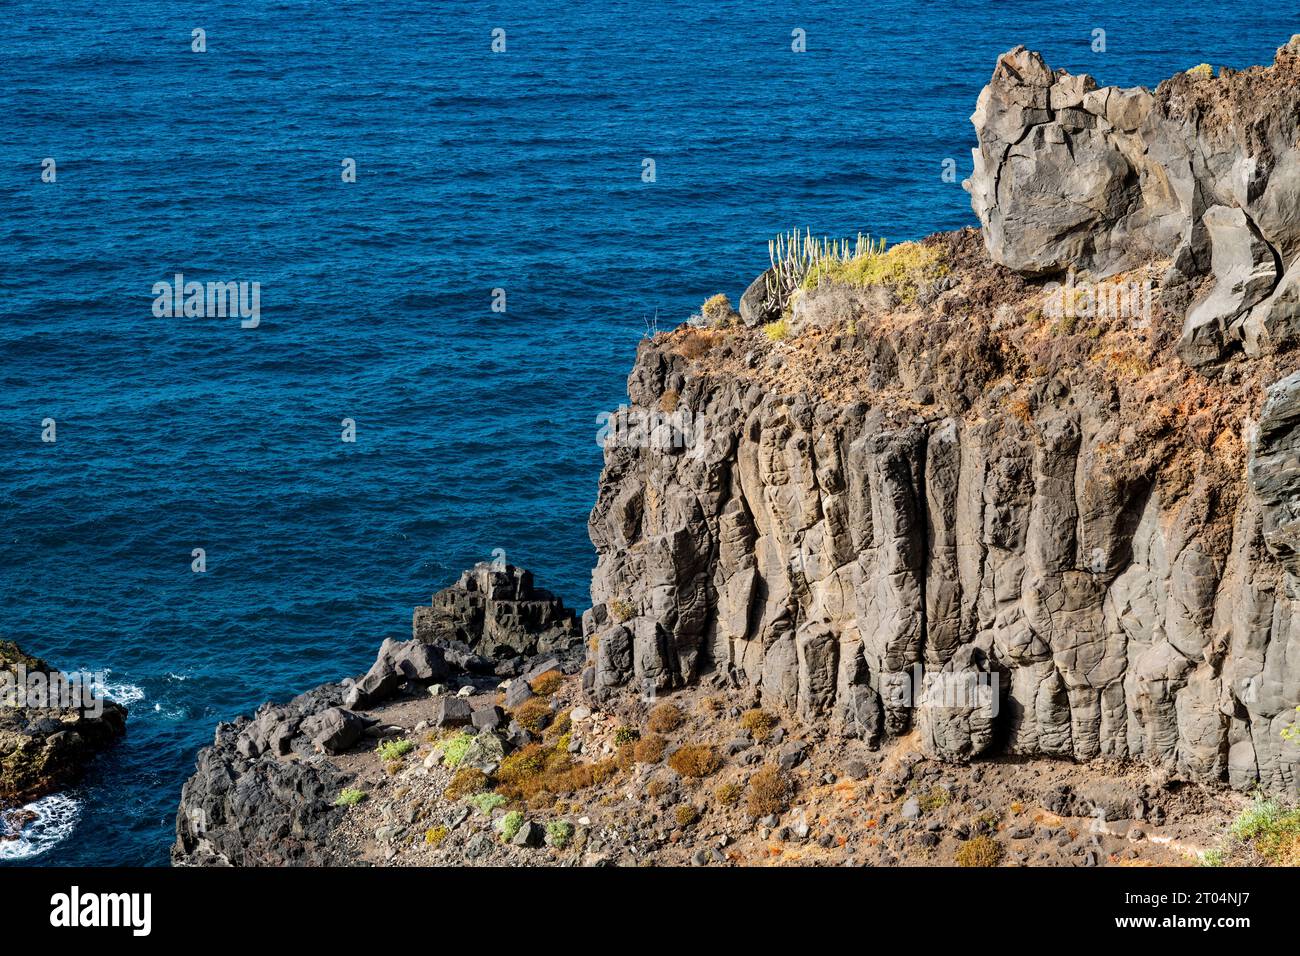 Basalte colonnaire formant la falaise de Rambla de Castro, un chemin de randonnée populaire sur la côte nord de Tenerife, îles Canaries, Espagne Banque D'Images